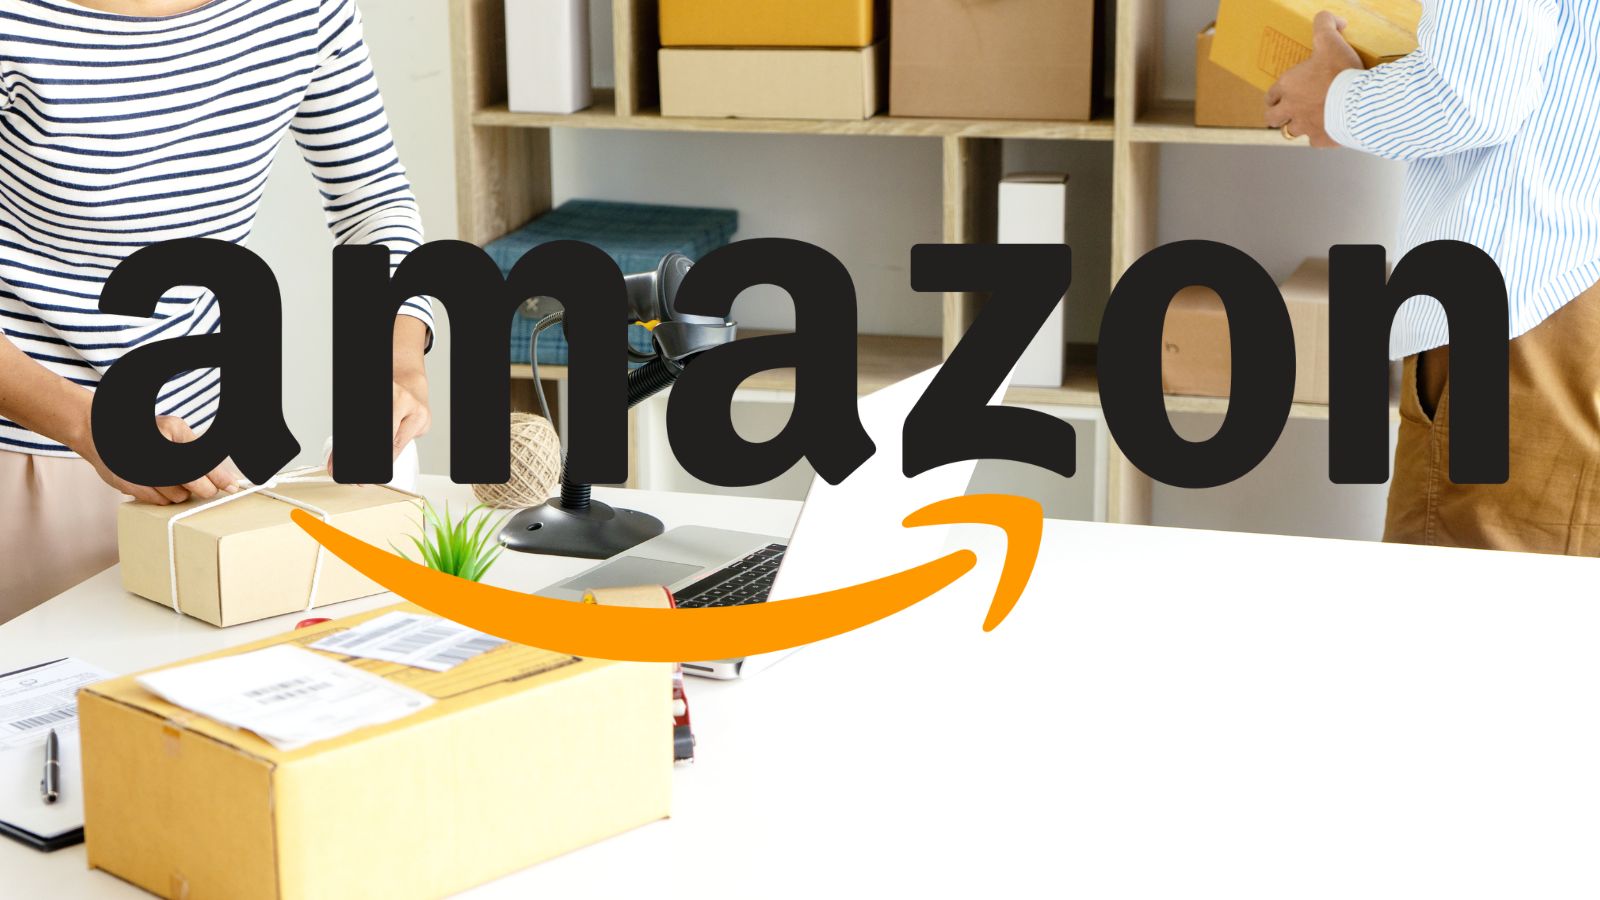 Amazon è STREPITOSA: oggi REGALA smartphone gratis e prodotti al 70%